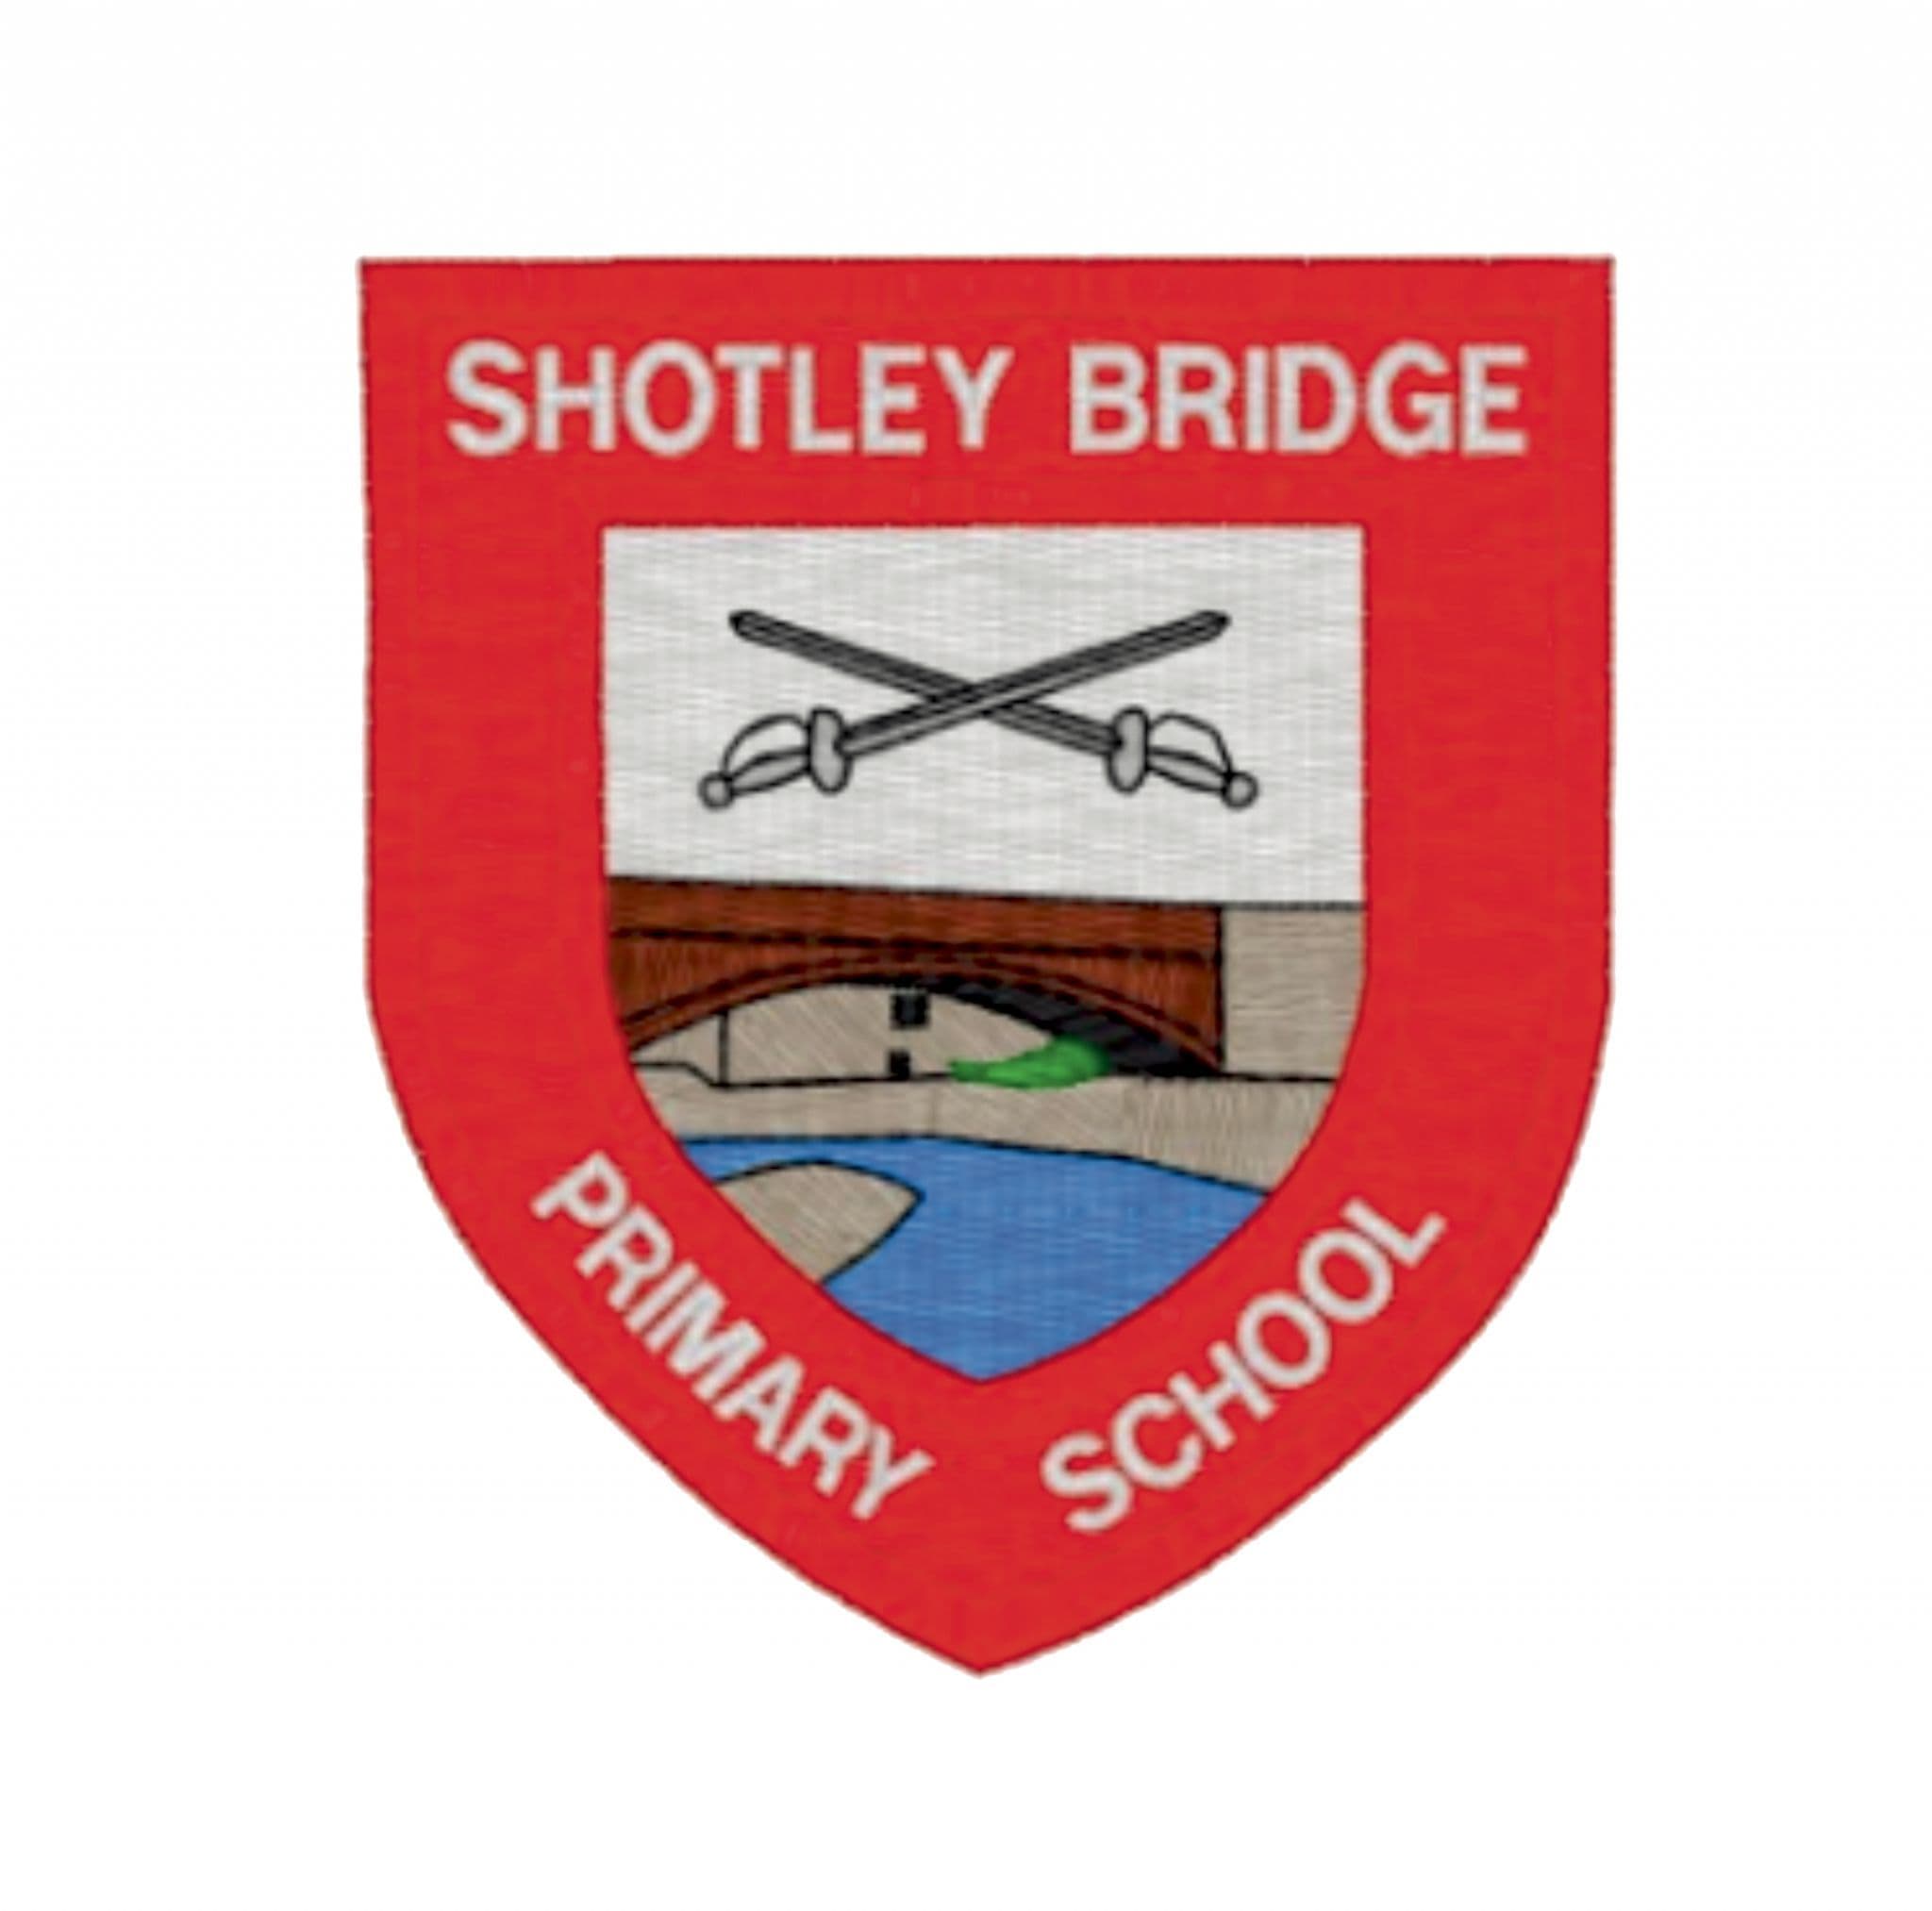 Shotley Bridge Primary School